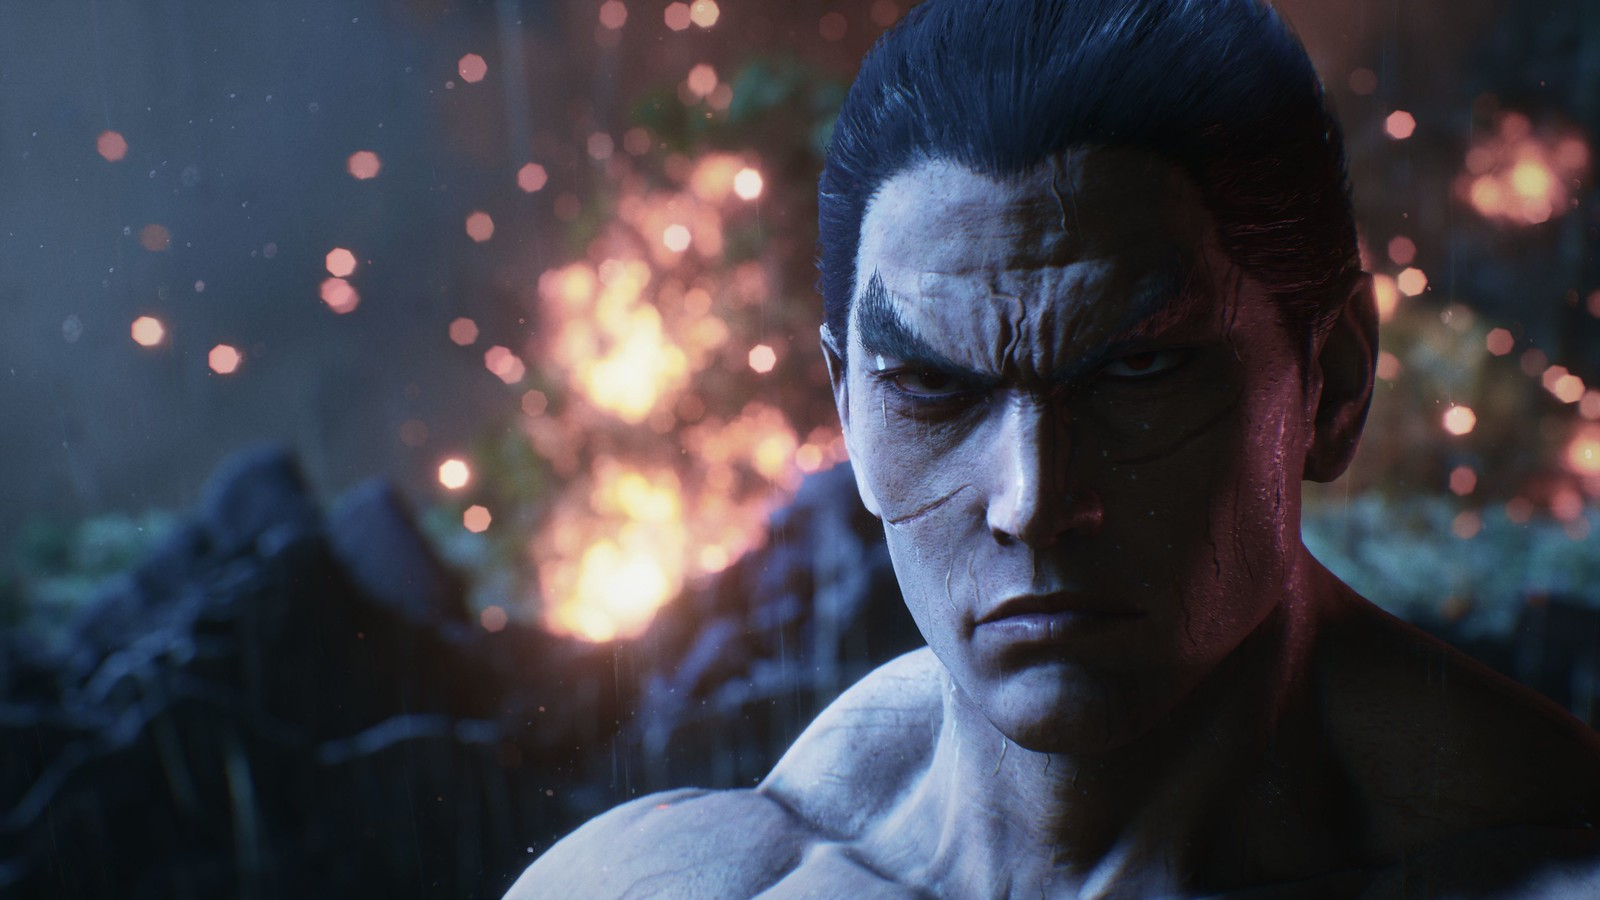 Tekken 8' Brings Fan Favourite Feng Wei Back Into The Fight, Opens